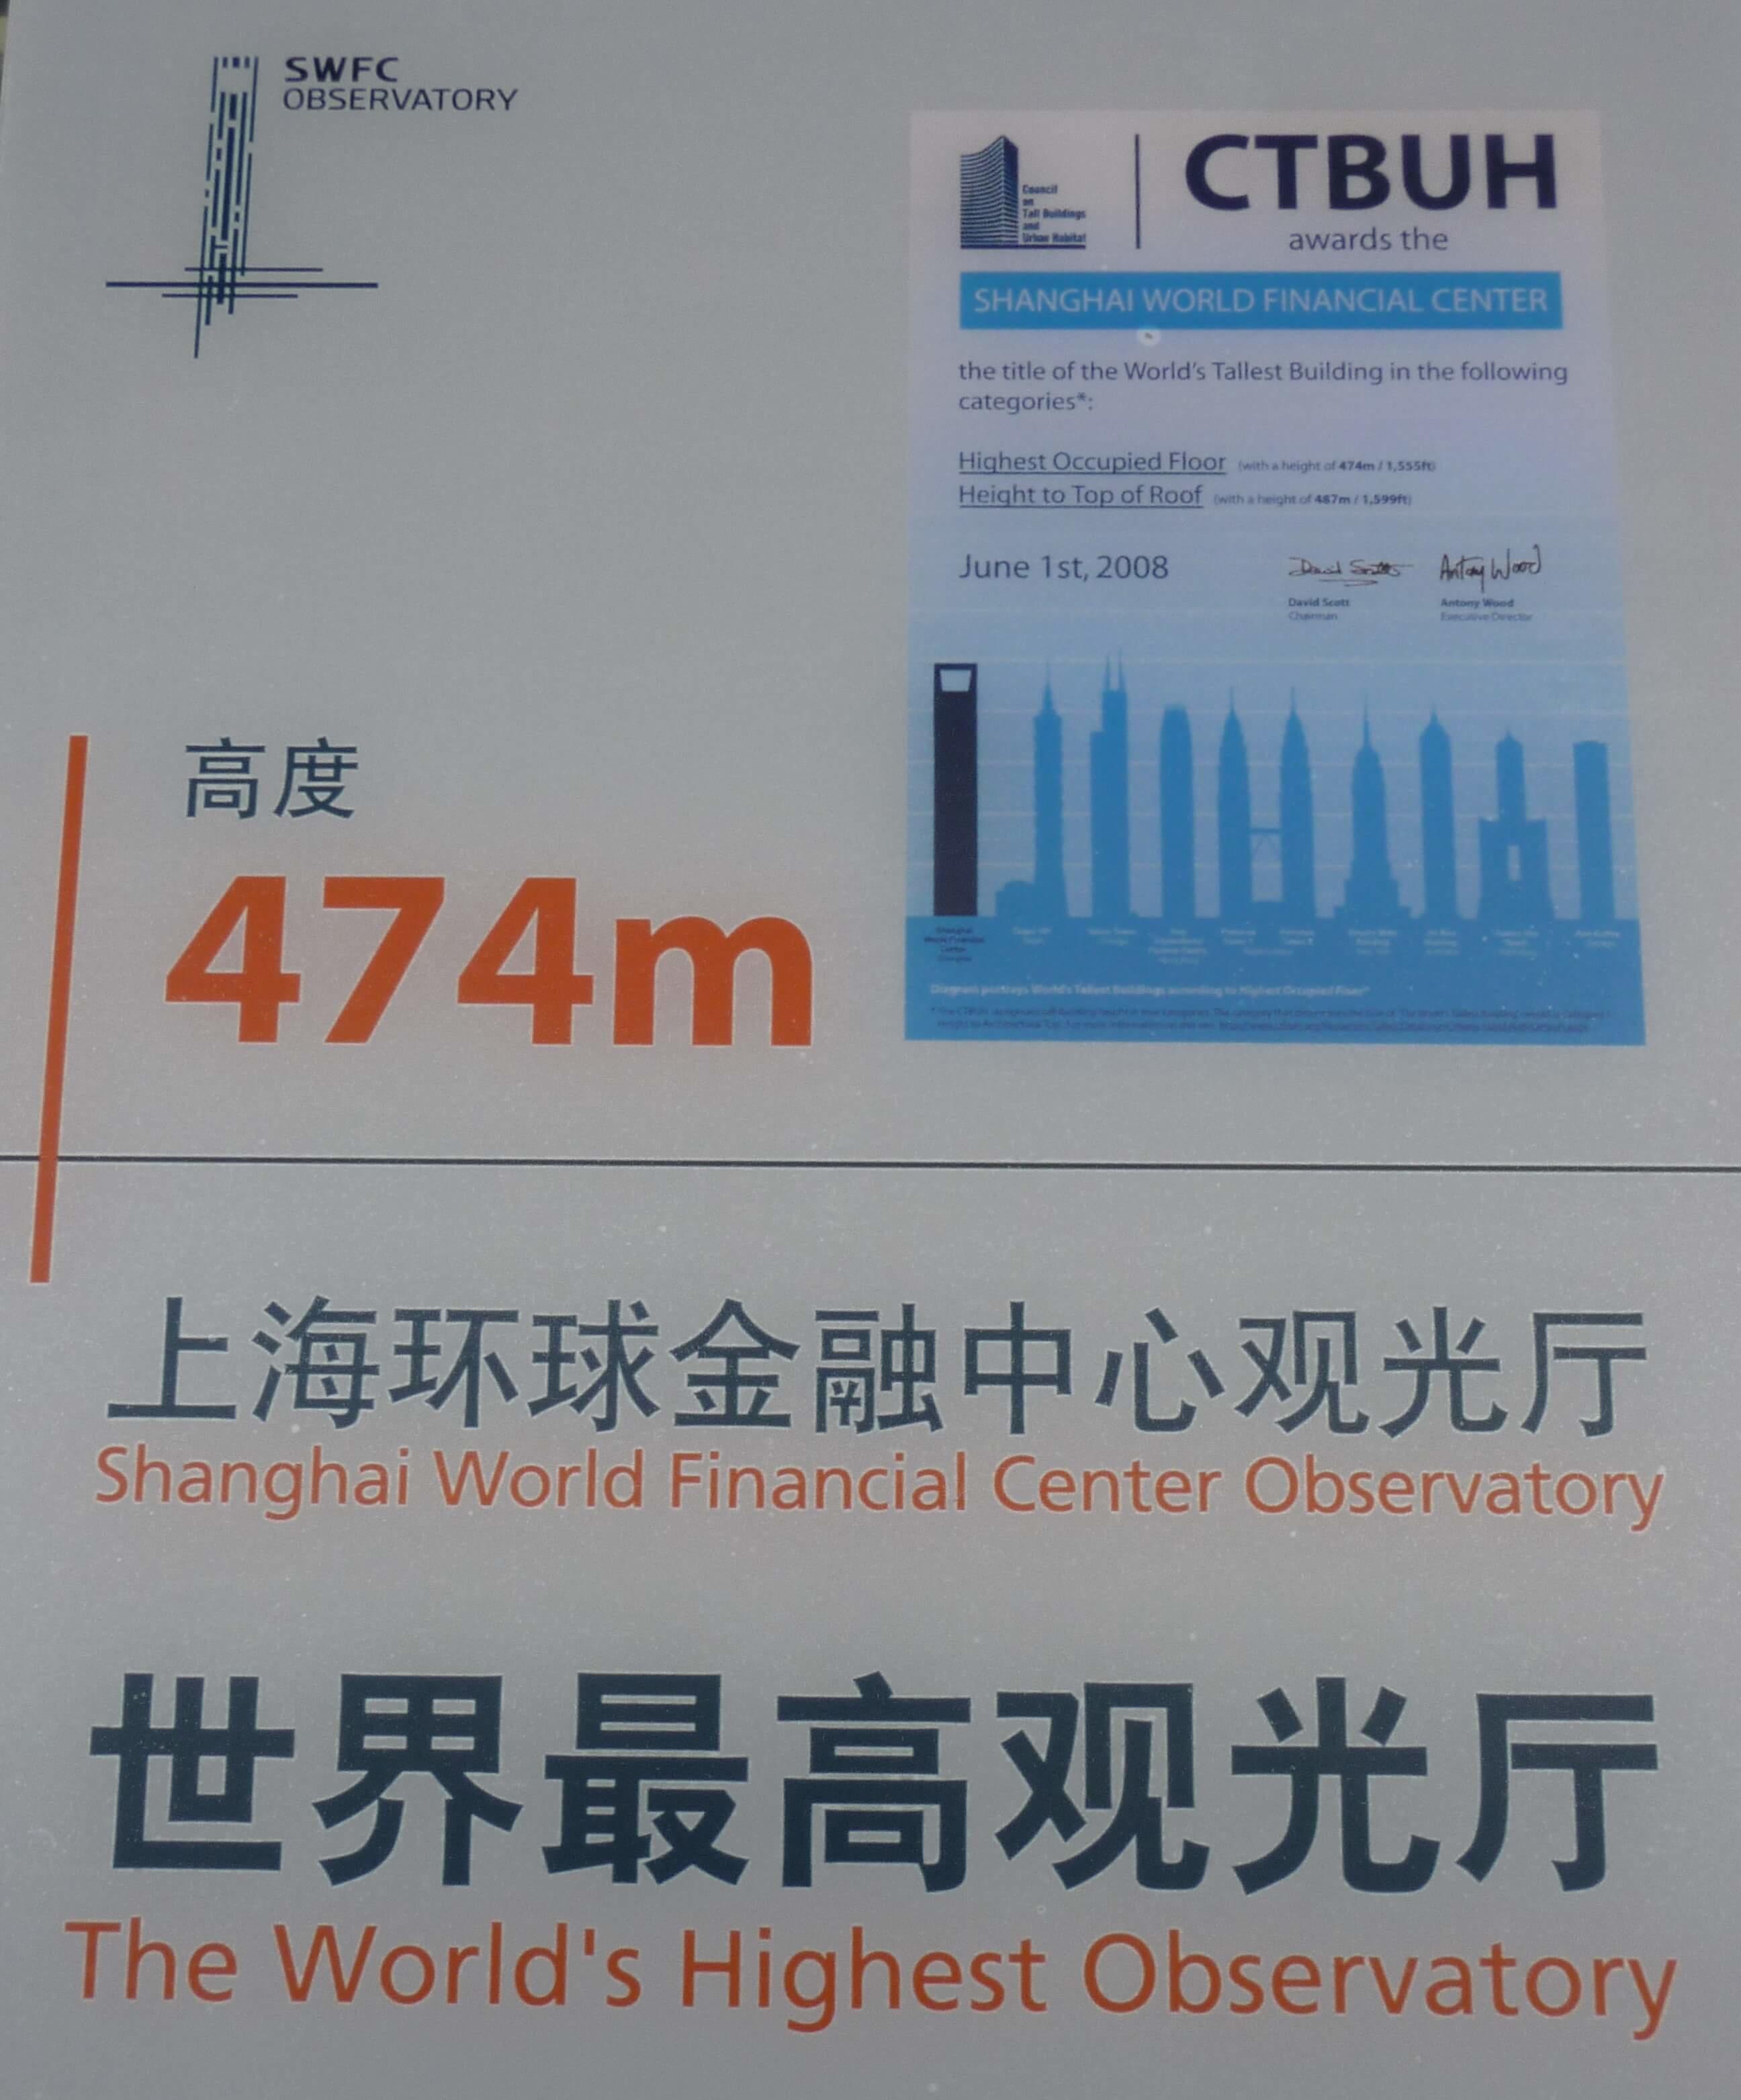 上海環球金融中心の最上階高度474m